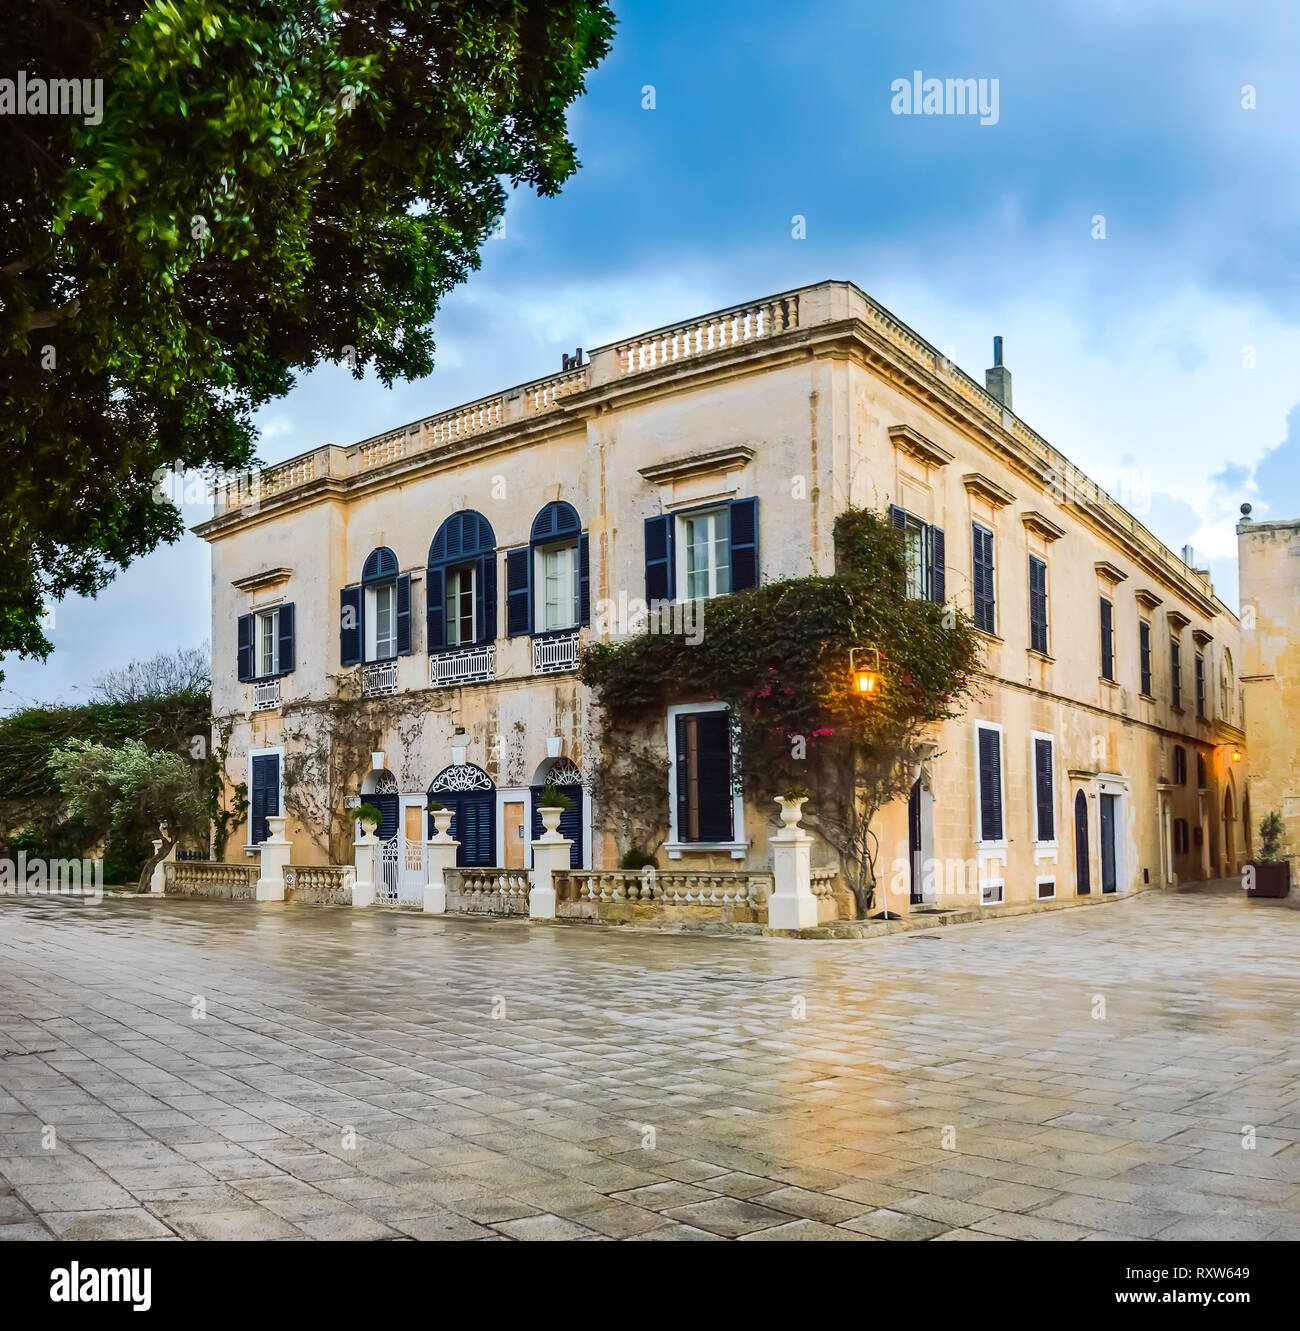 Mdina, Malta: Stadthaus an der Bastion Square mit künstlerischen Windows, Klettern und Laterne Licht. Mittelalterliche maltesische Architektur Stockfoto